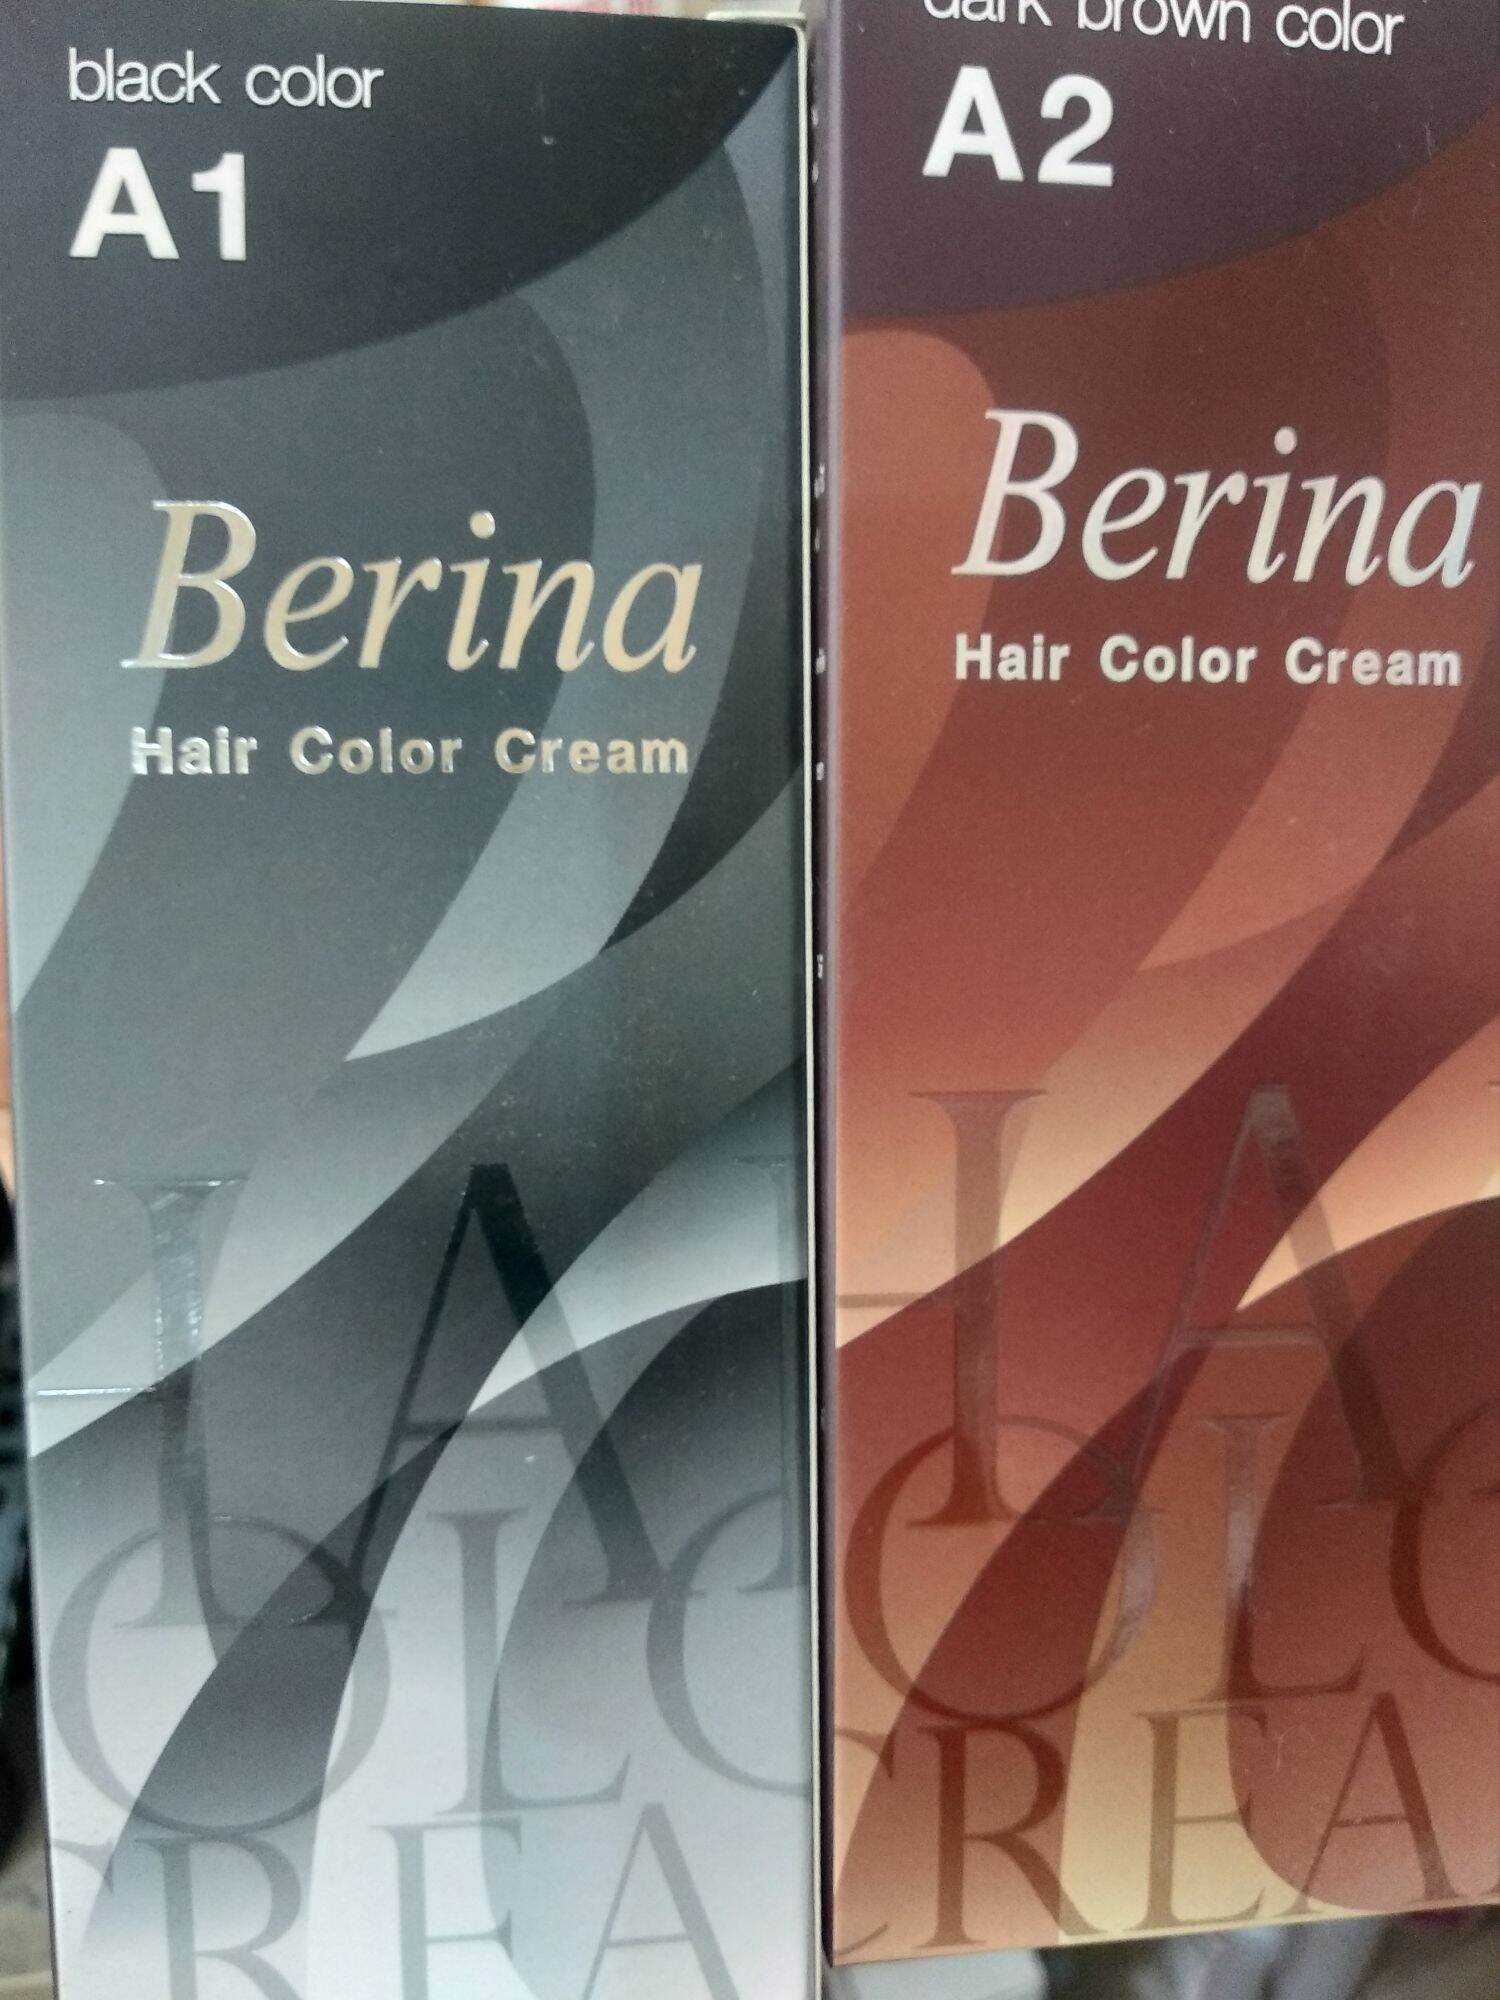 Muốn có mái tóc mới đẹp nhưng không muốn tổn thương cho nó? Hãy thử ngay Thuốc nhuộm tóc Berina A1 - giải pháp hoàn hảo cho mái tóc sáng bóng, mượt mà hơn! Hãy xem hình ảnh để tìm hiểu thêm về sản phẩm này!